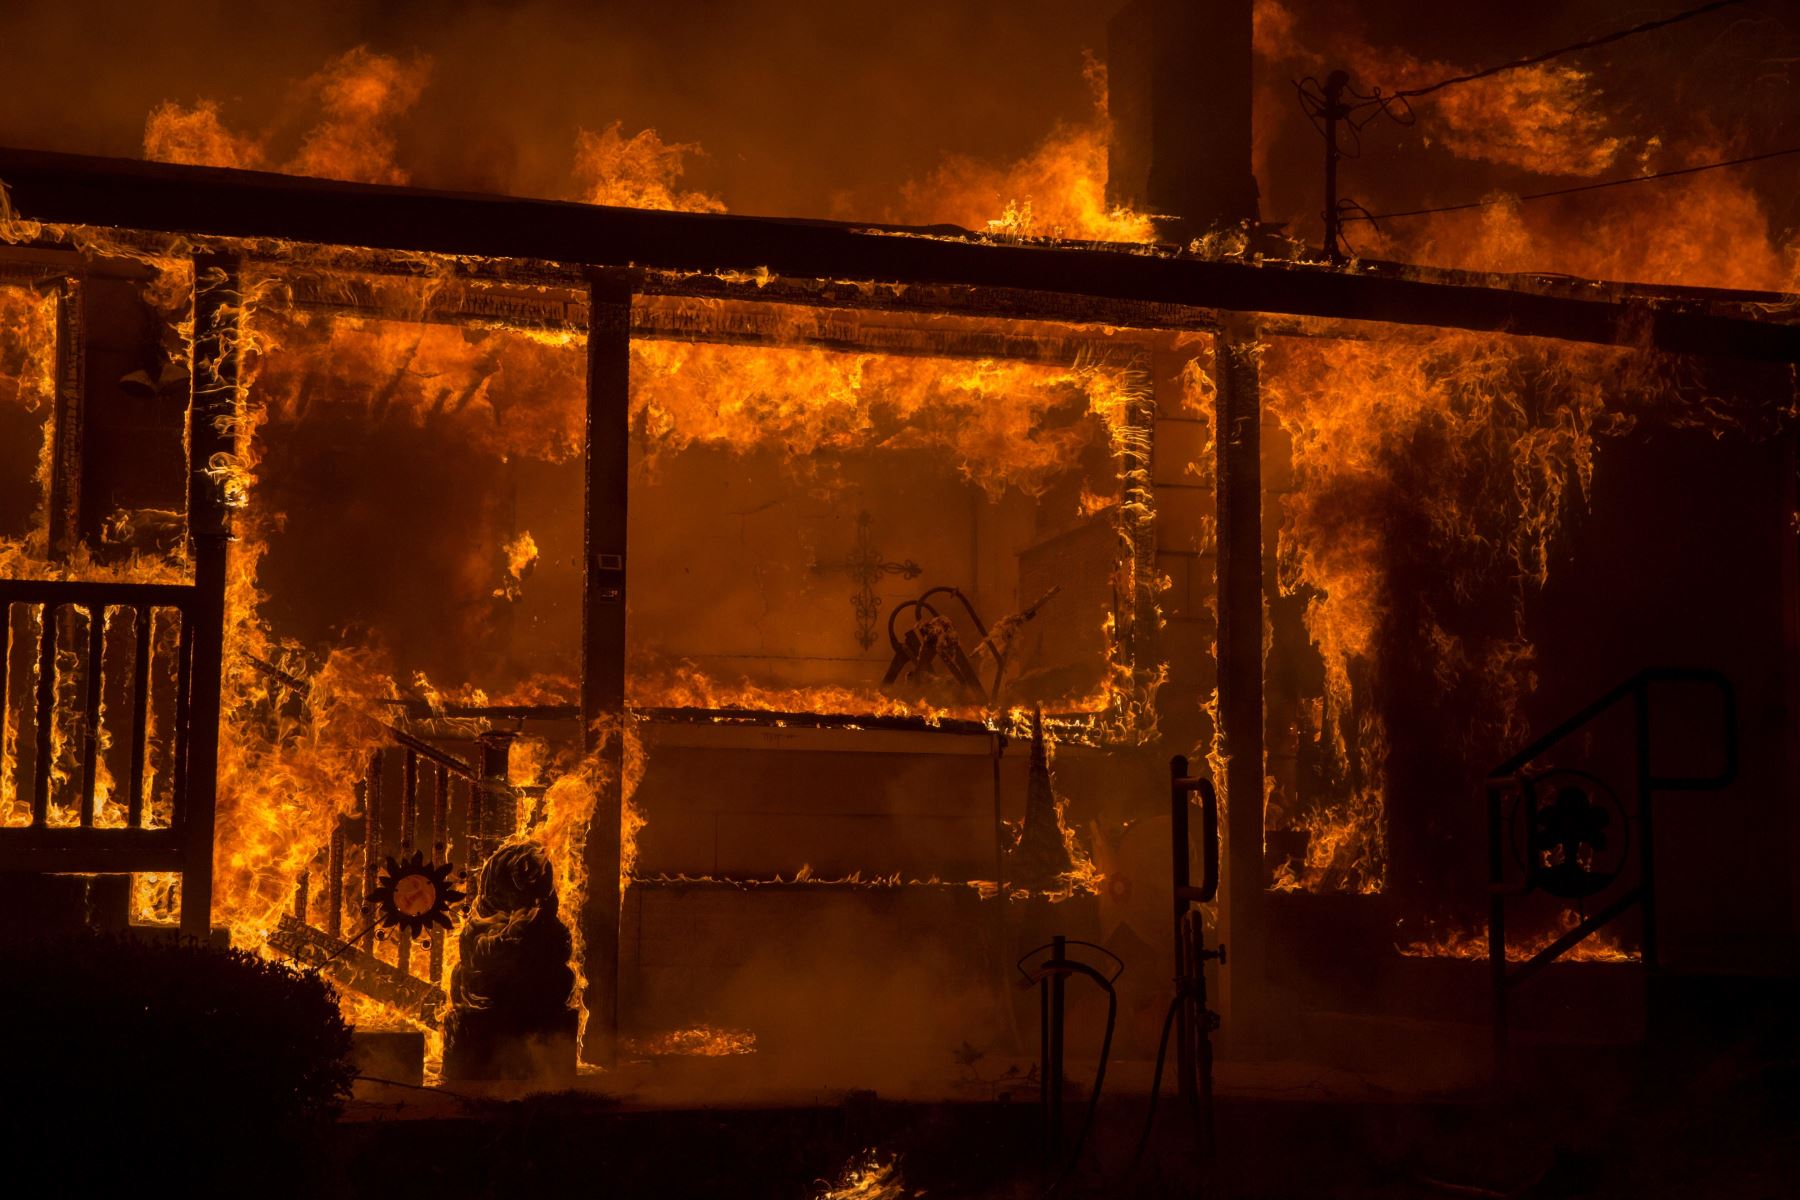 Vista del incendio hoy, jueves 8 de noviembre de 2018, en el condado de Butte, California (EE. UU.). Se ordenó a las comunidades cercanas a Pulga, Paraíso y Concurrencia que evacuar la zona.EFE